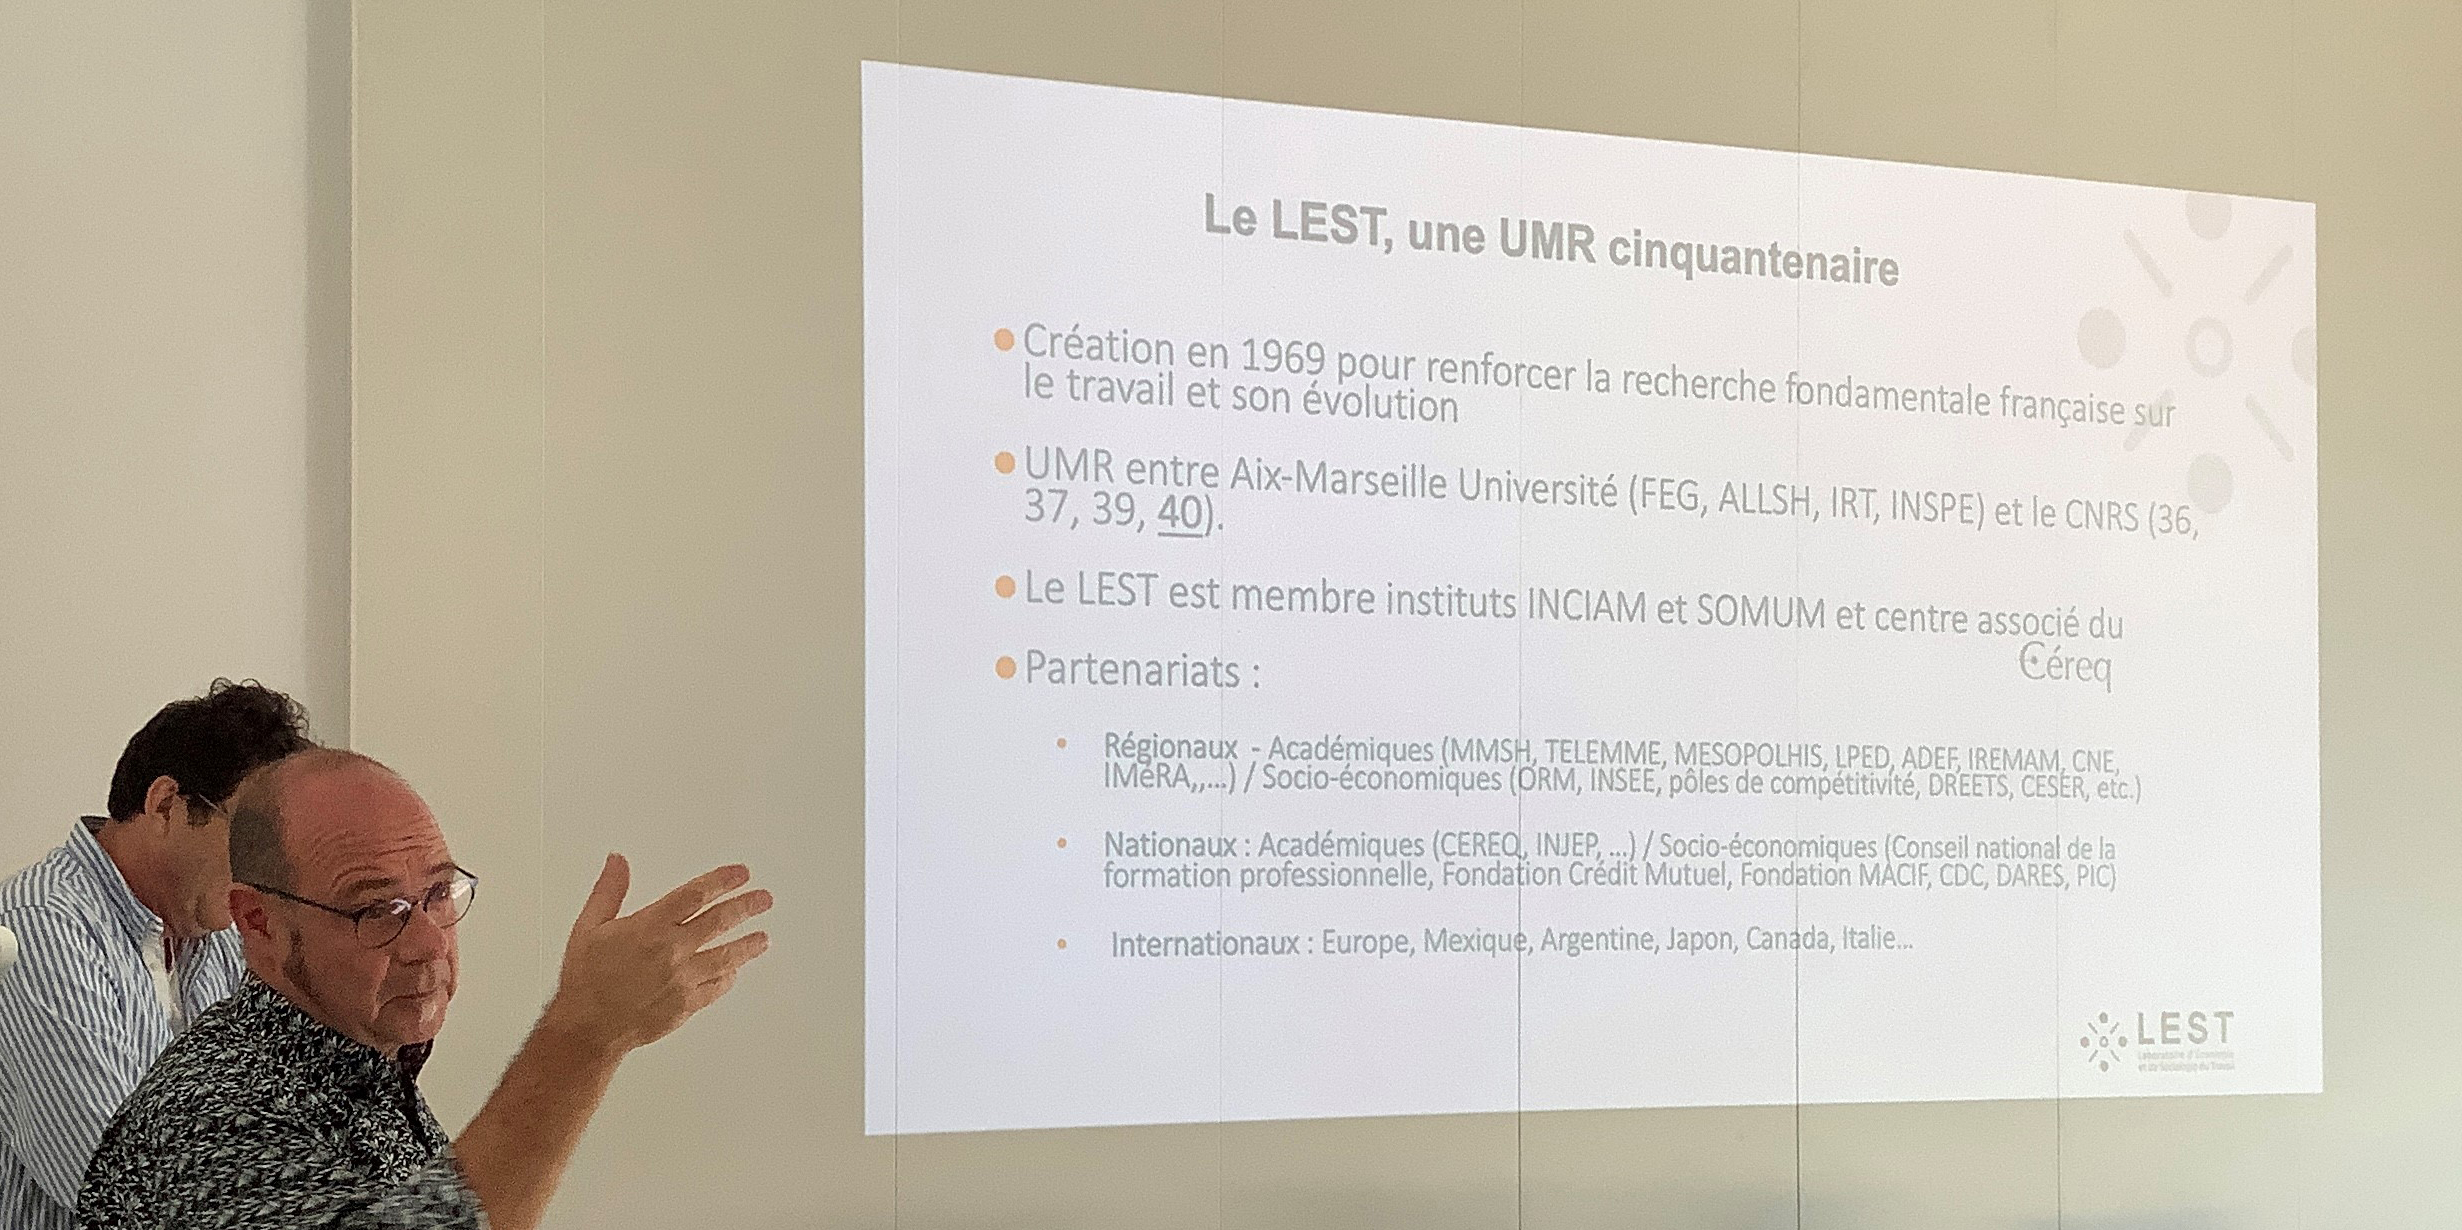 Le LEST a participé au séminaire sur l'interdisciplinarité en sciences sociales organisé par la Faculté d'Économie et de Gestion d'Aix-Marseille Université - FEG